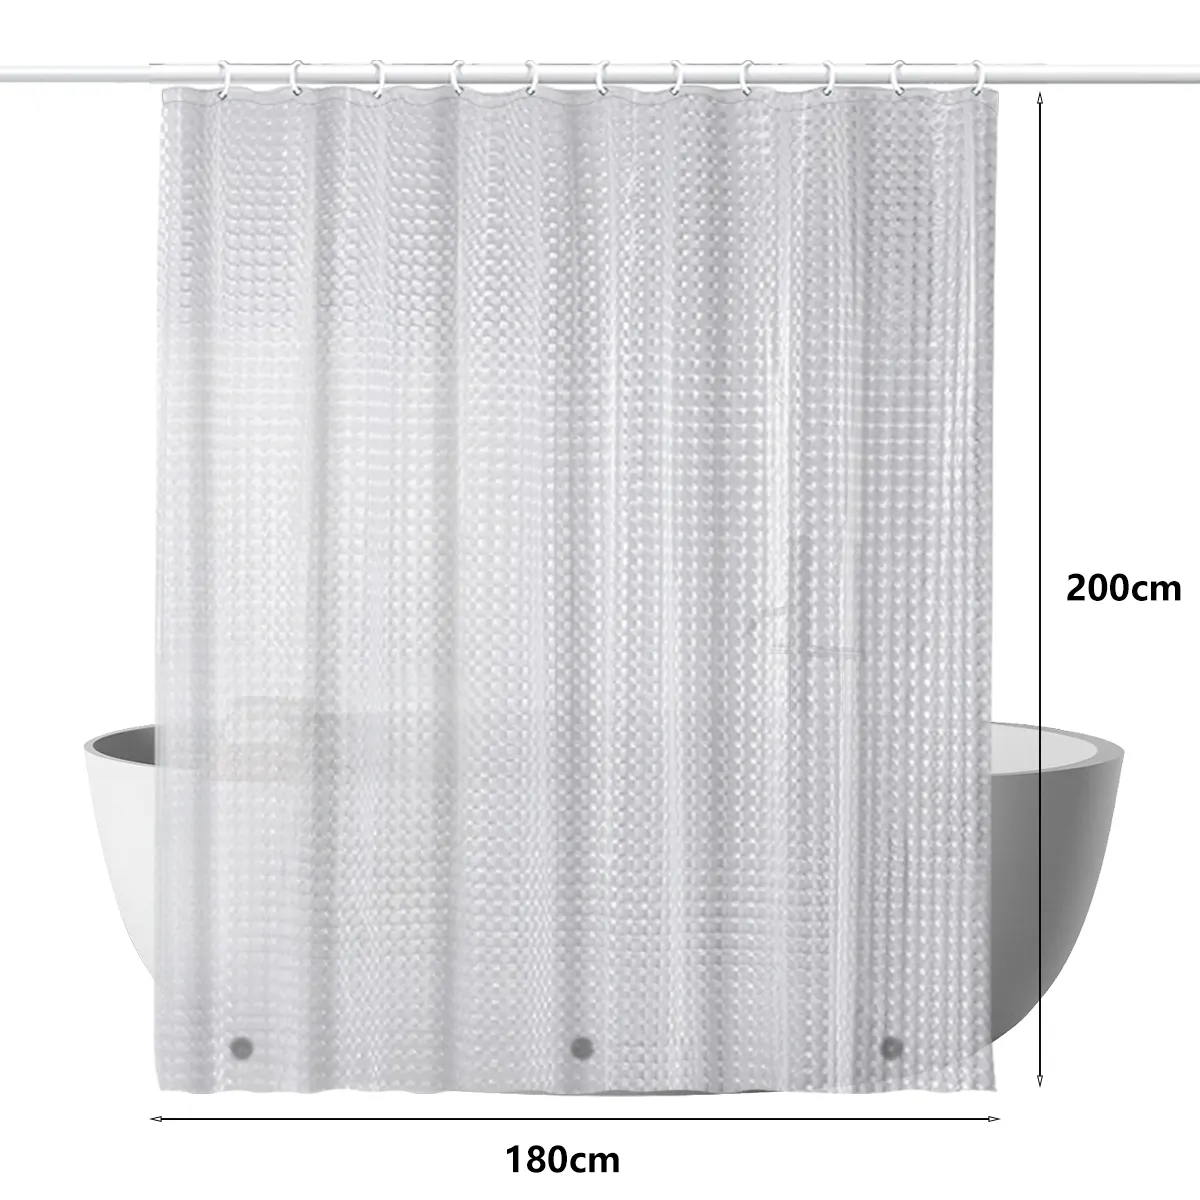 Dingxin сверхпрочная 3D занавеска для душа кошачий глаз прозрачная занавеска для ванной комнаты Влажная и сухая сепарация 180*200 см